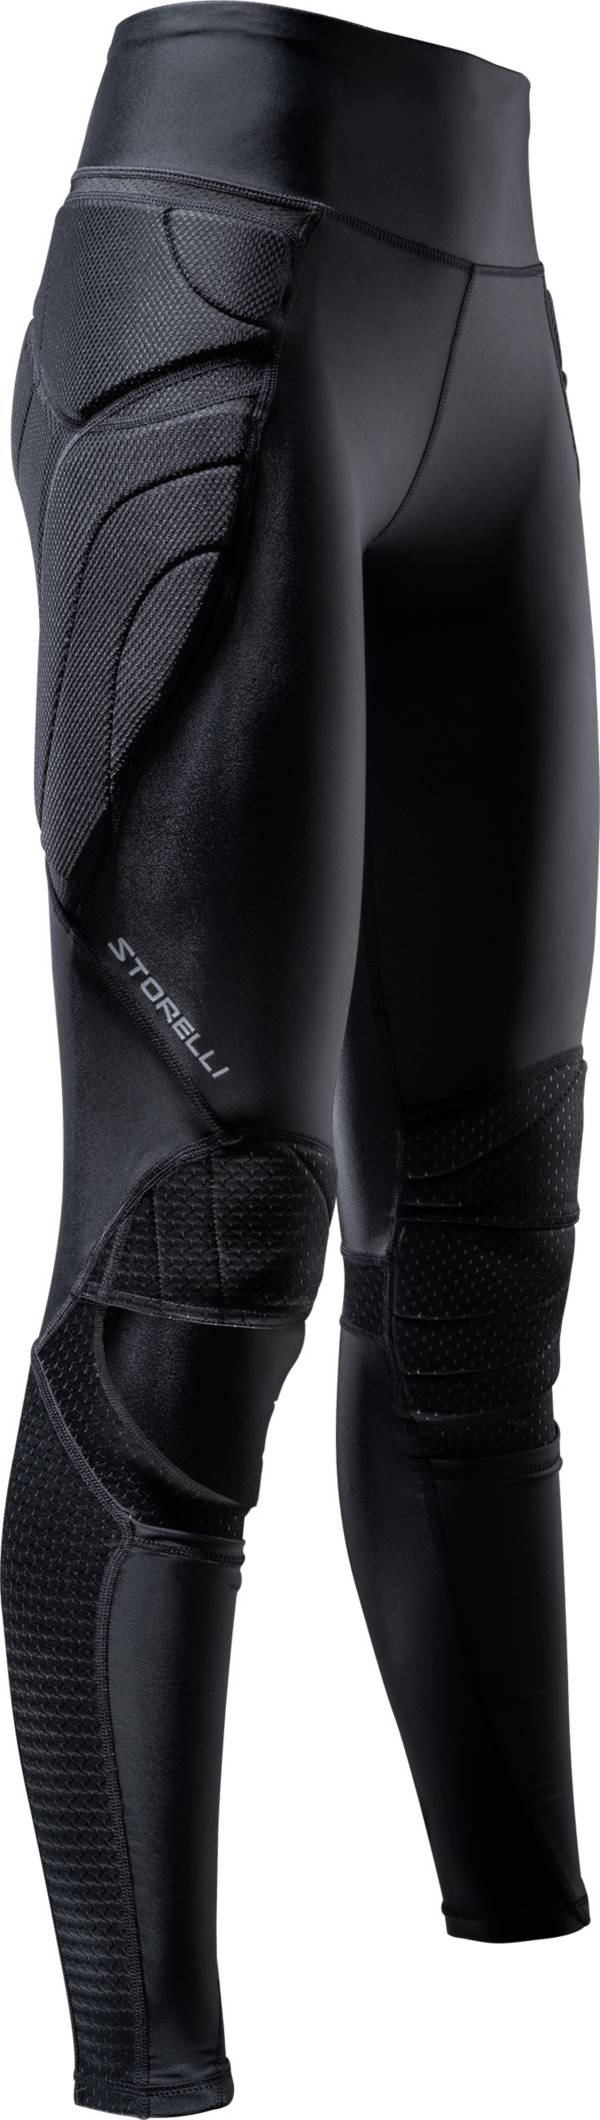 Storelli BodyShield Turf Burn Leggings 2 | Full-Length Padded Soccer Pants  | Enhanced Lower Body Protection Black